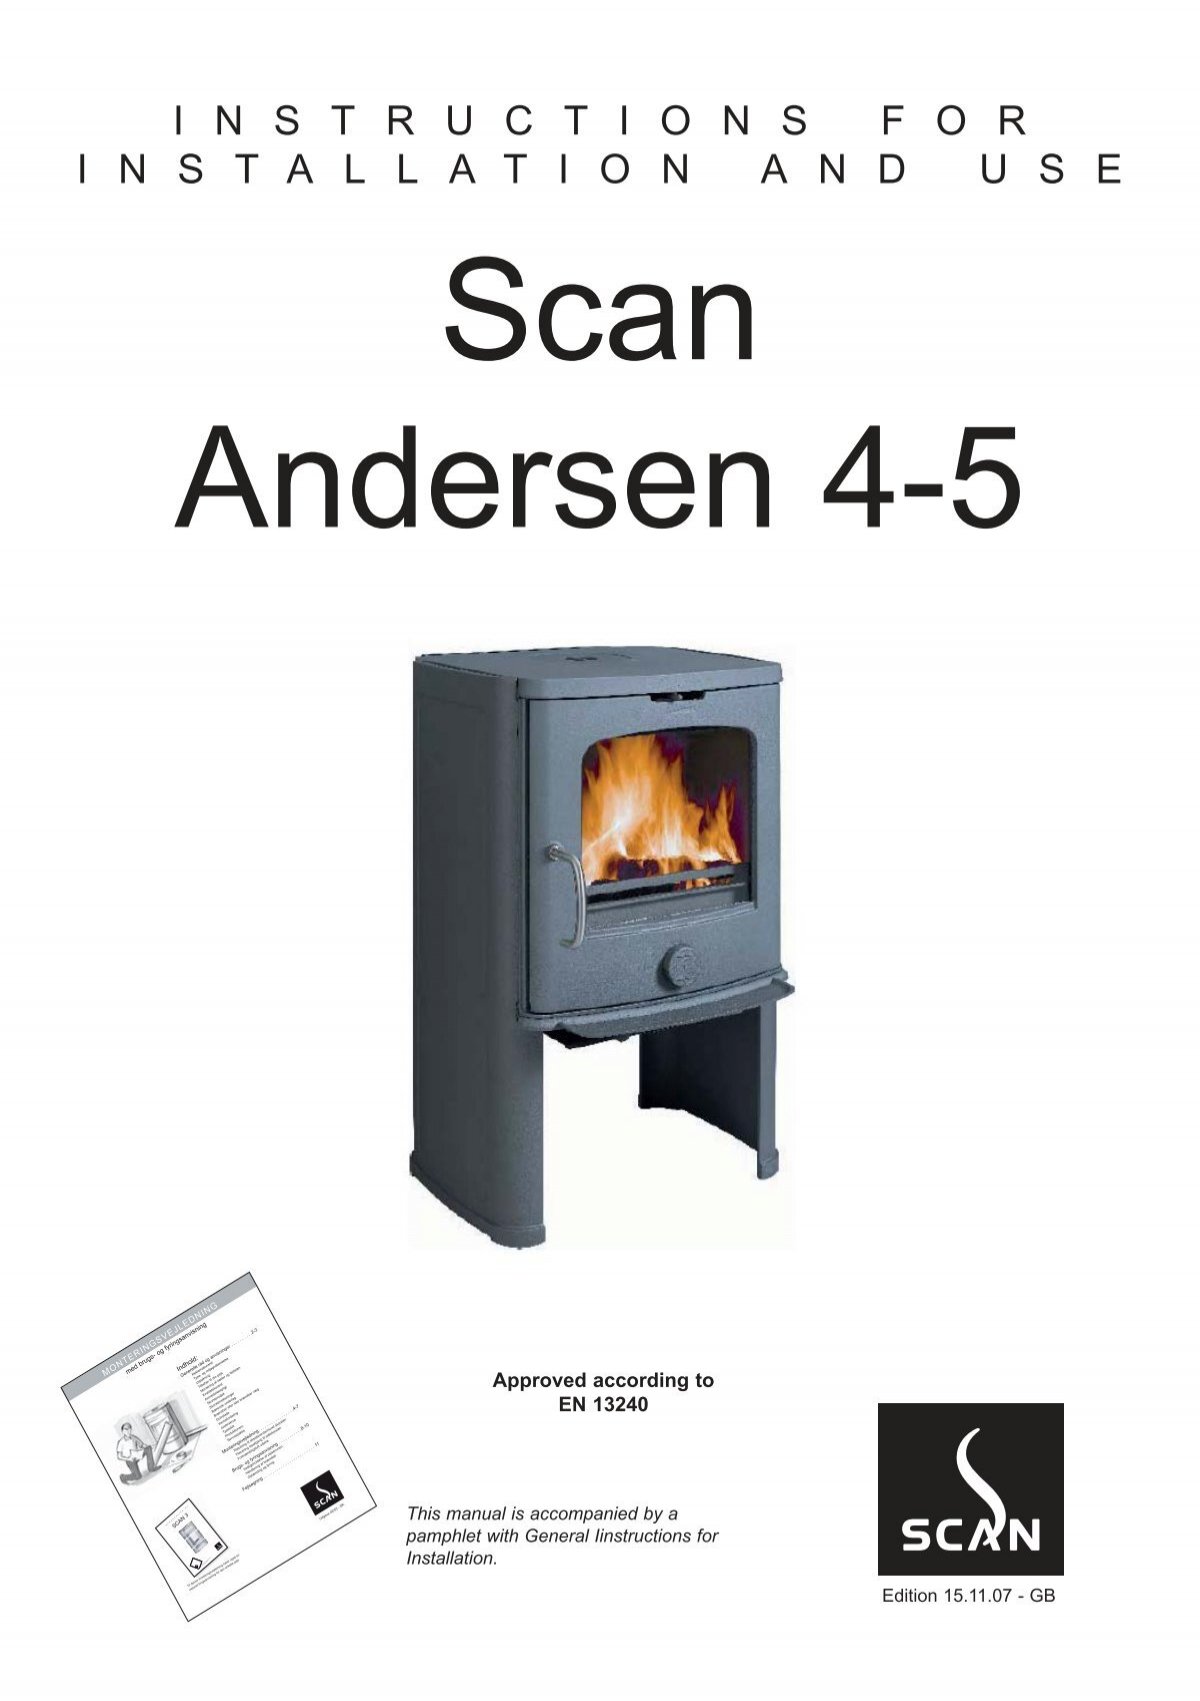 SCAN Andersen